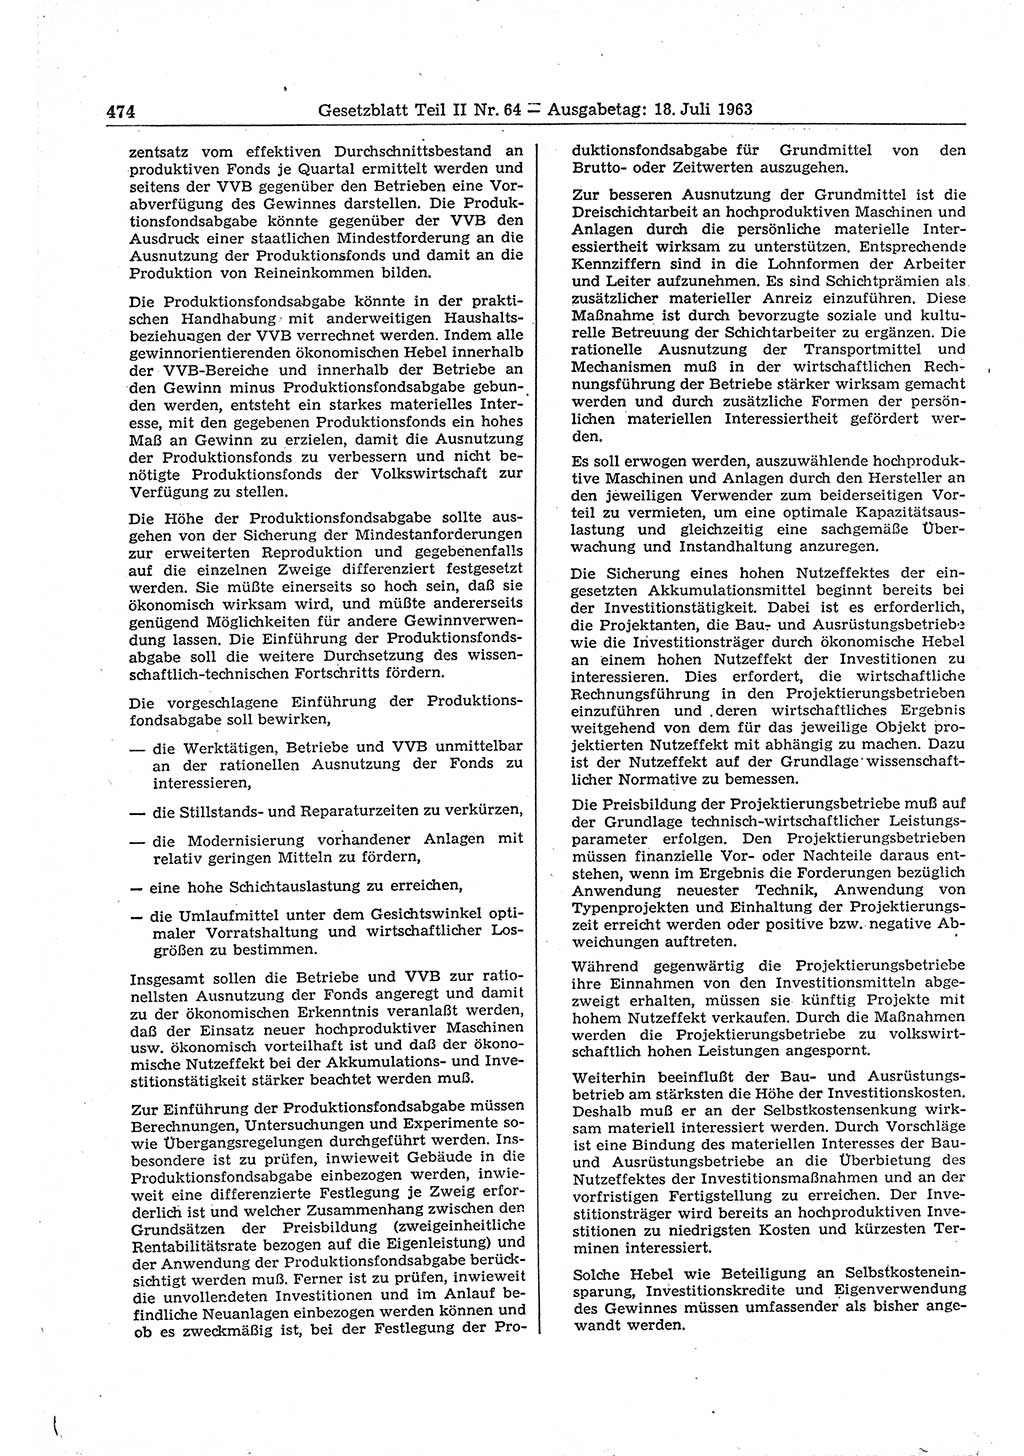 Gesetzblatt (GBl.) der Deutschen Demokratischen Republik (DDR) Teil ⅠⅠ 1963, Seite 474 (GBl. DDR ⅠⅠ 1963, S. 474)